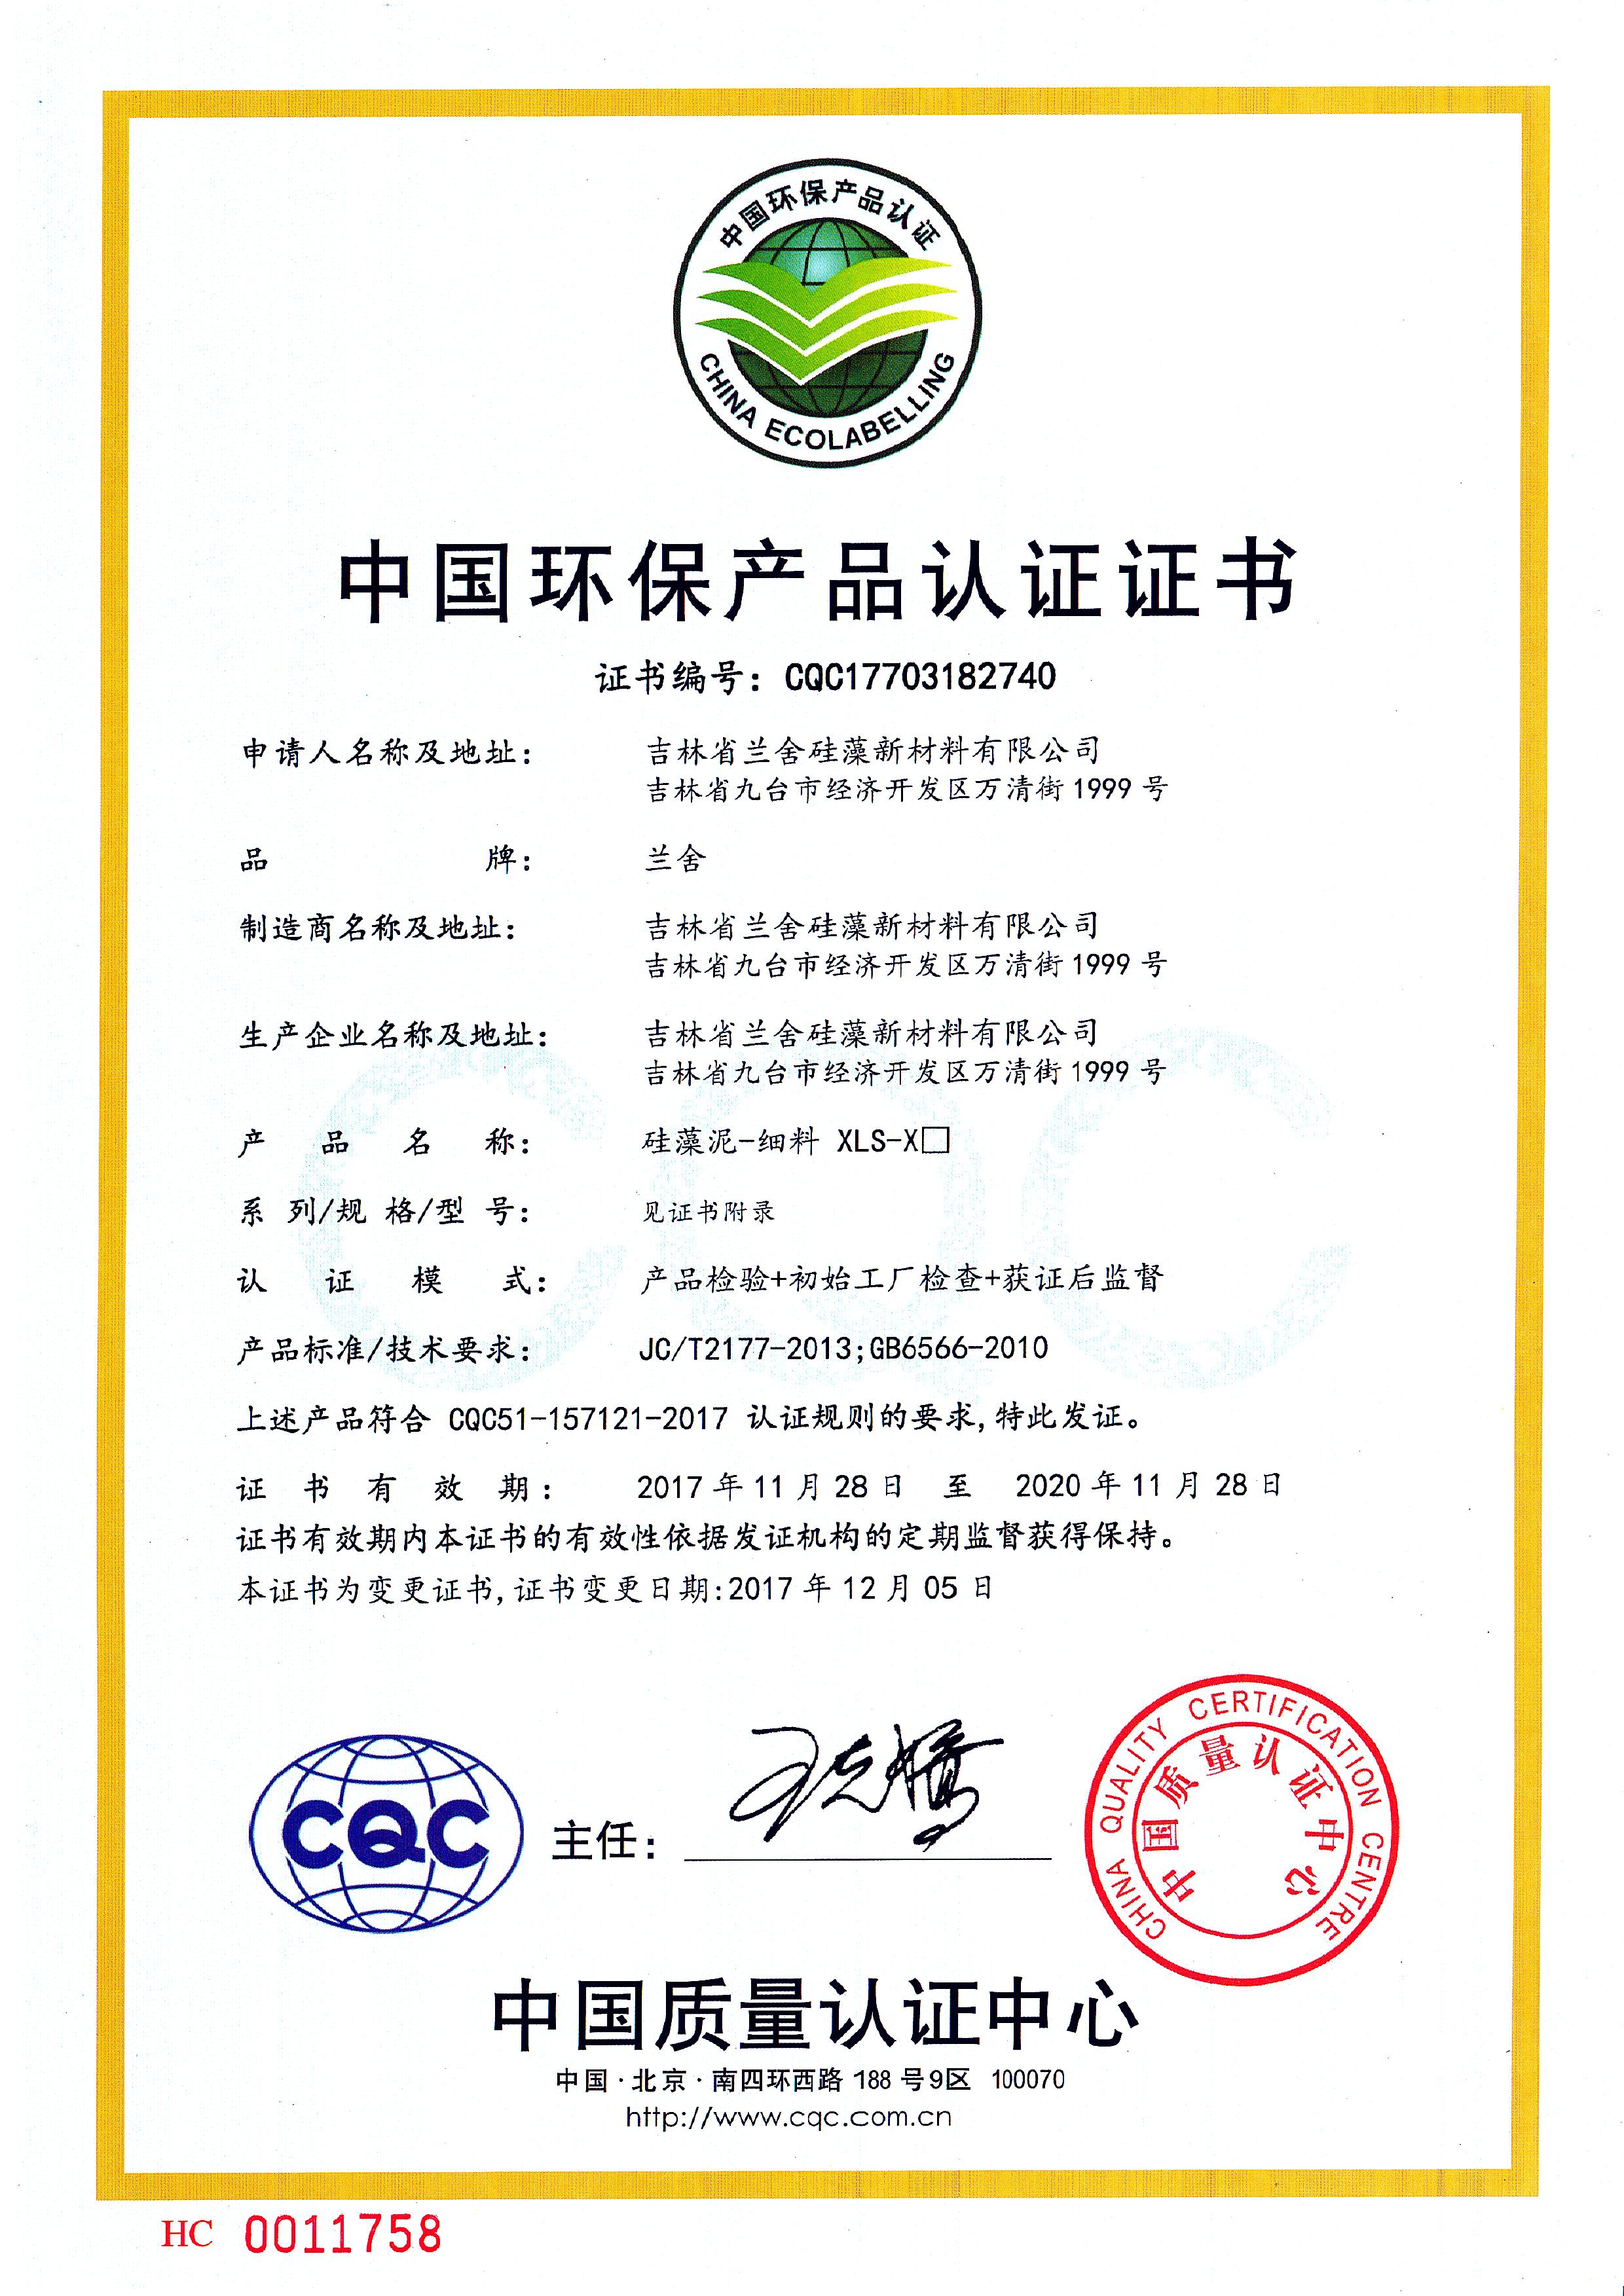 中国环保产品认证证书-细料.jpg